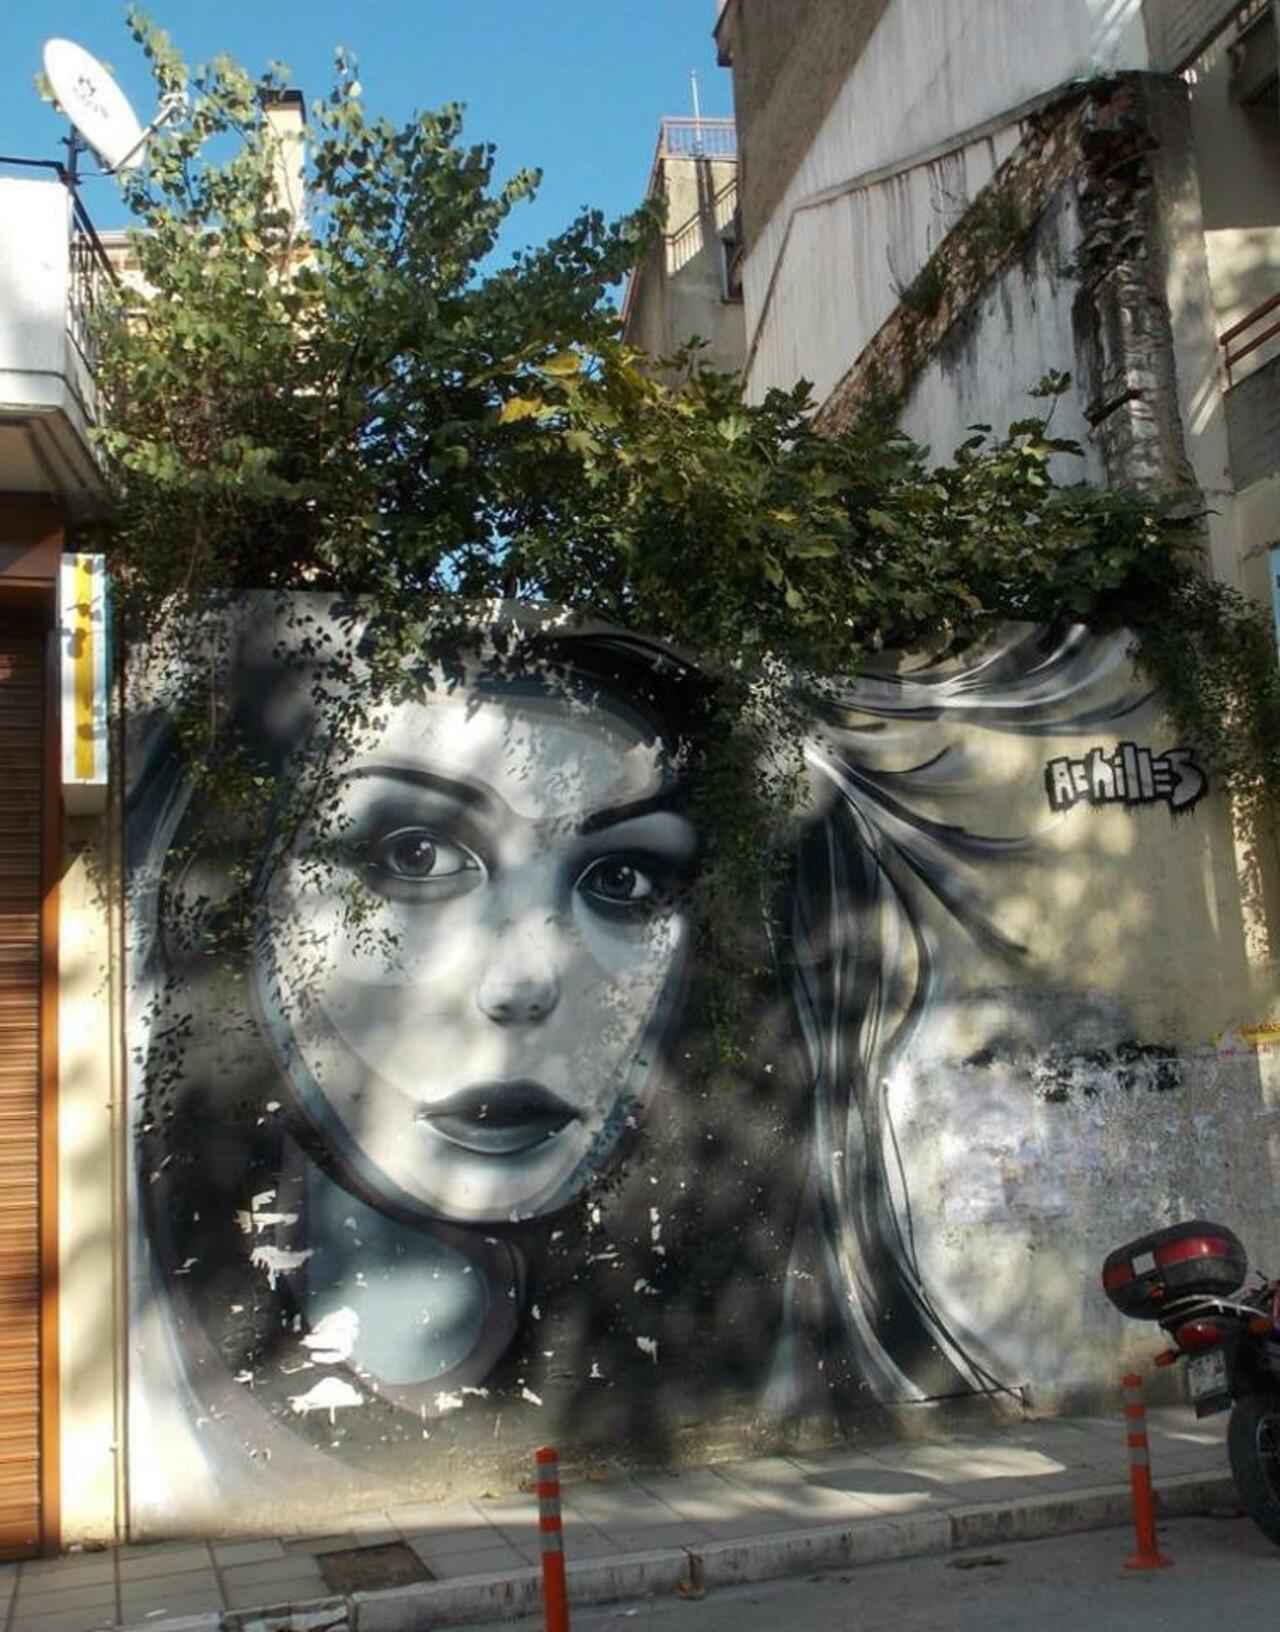 When Street Art meets nature by the artist Achilles 

#art #arte #graffiti #streetart http://t.co/6ikwia16Xs